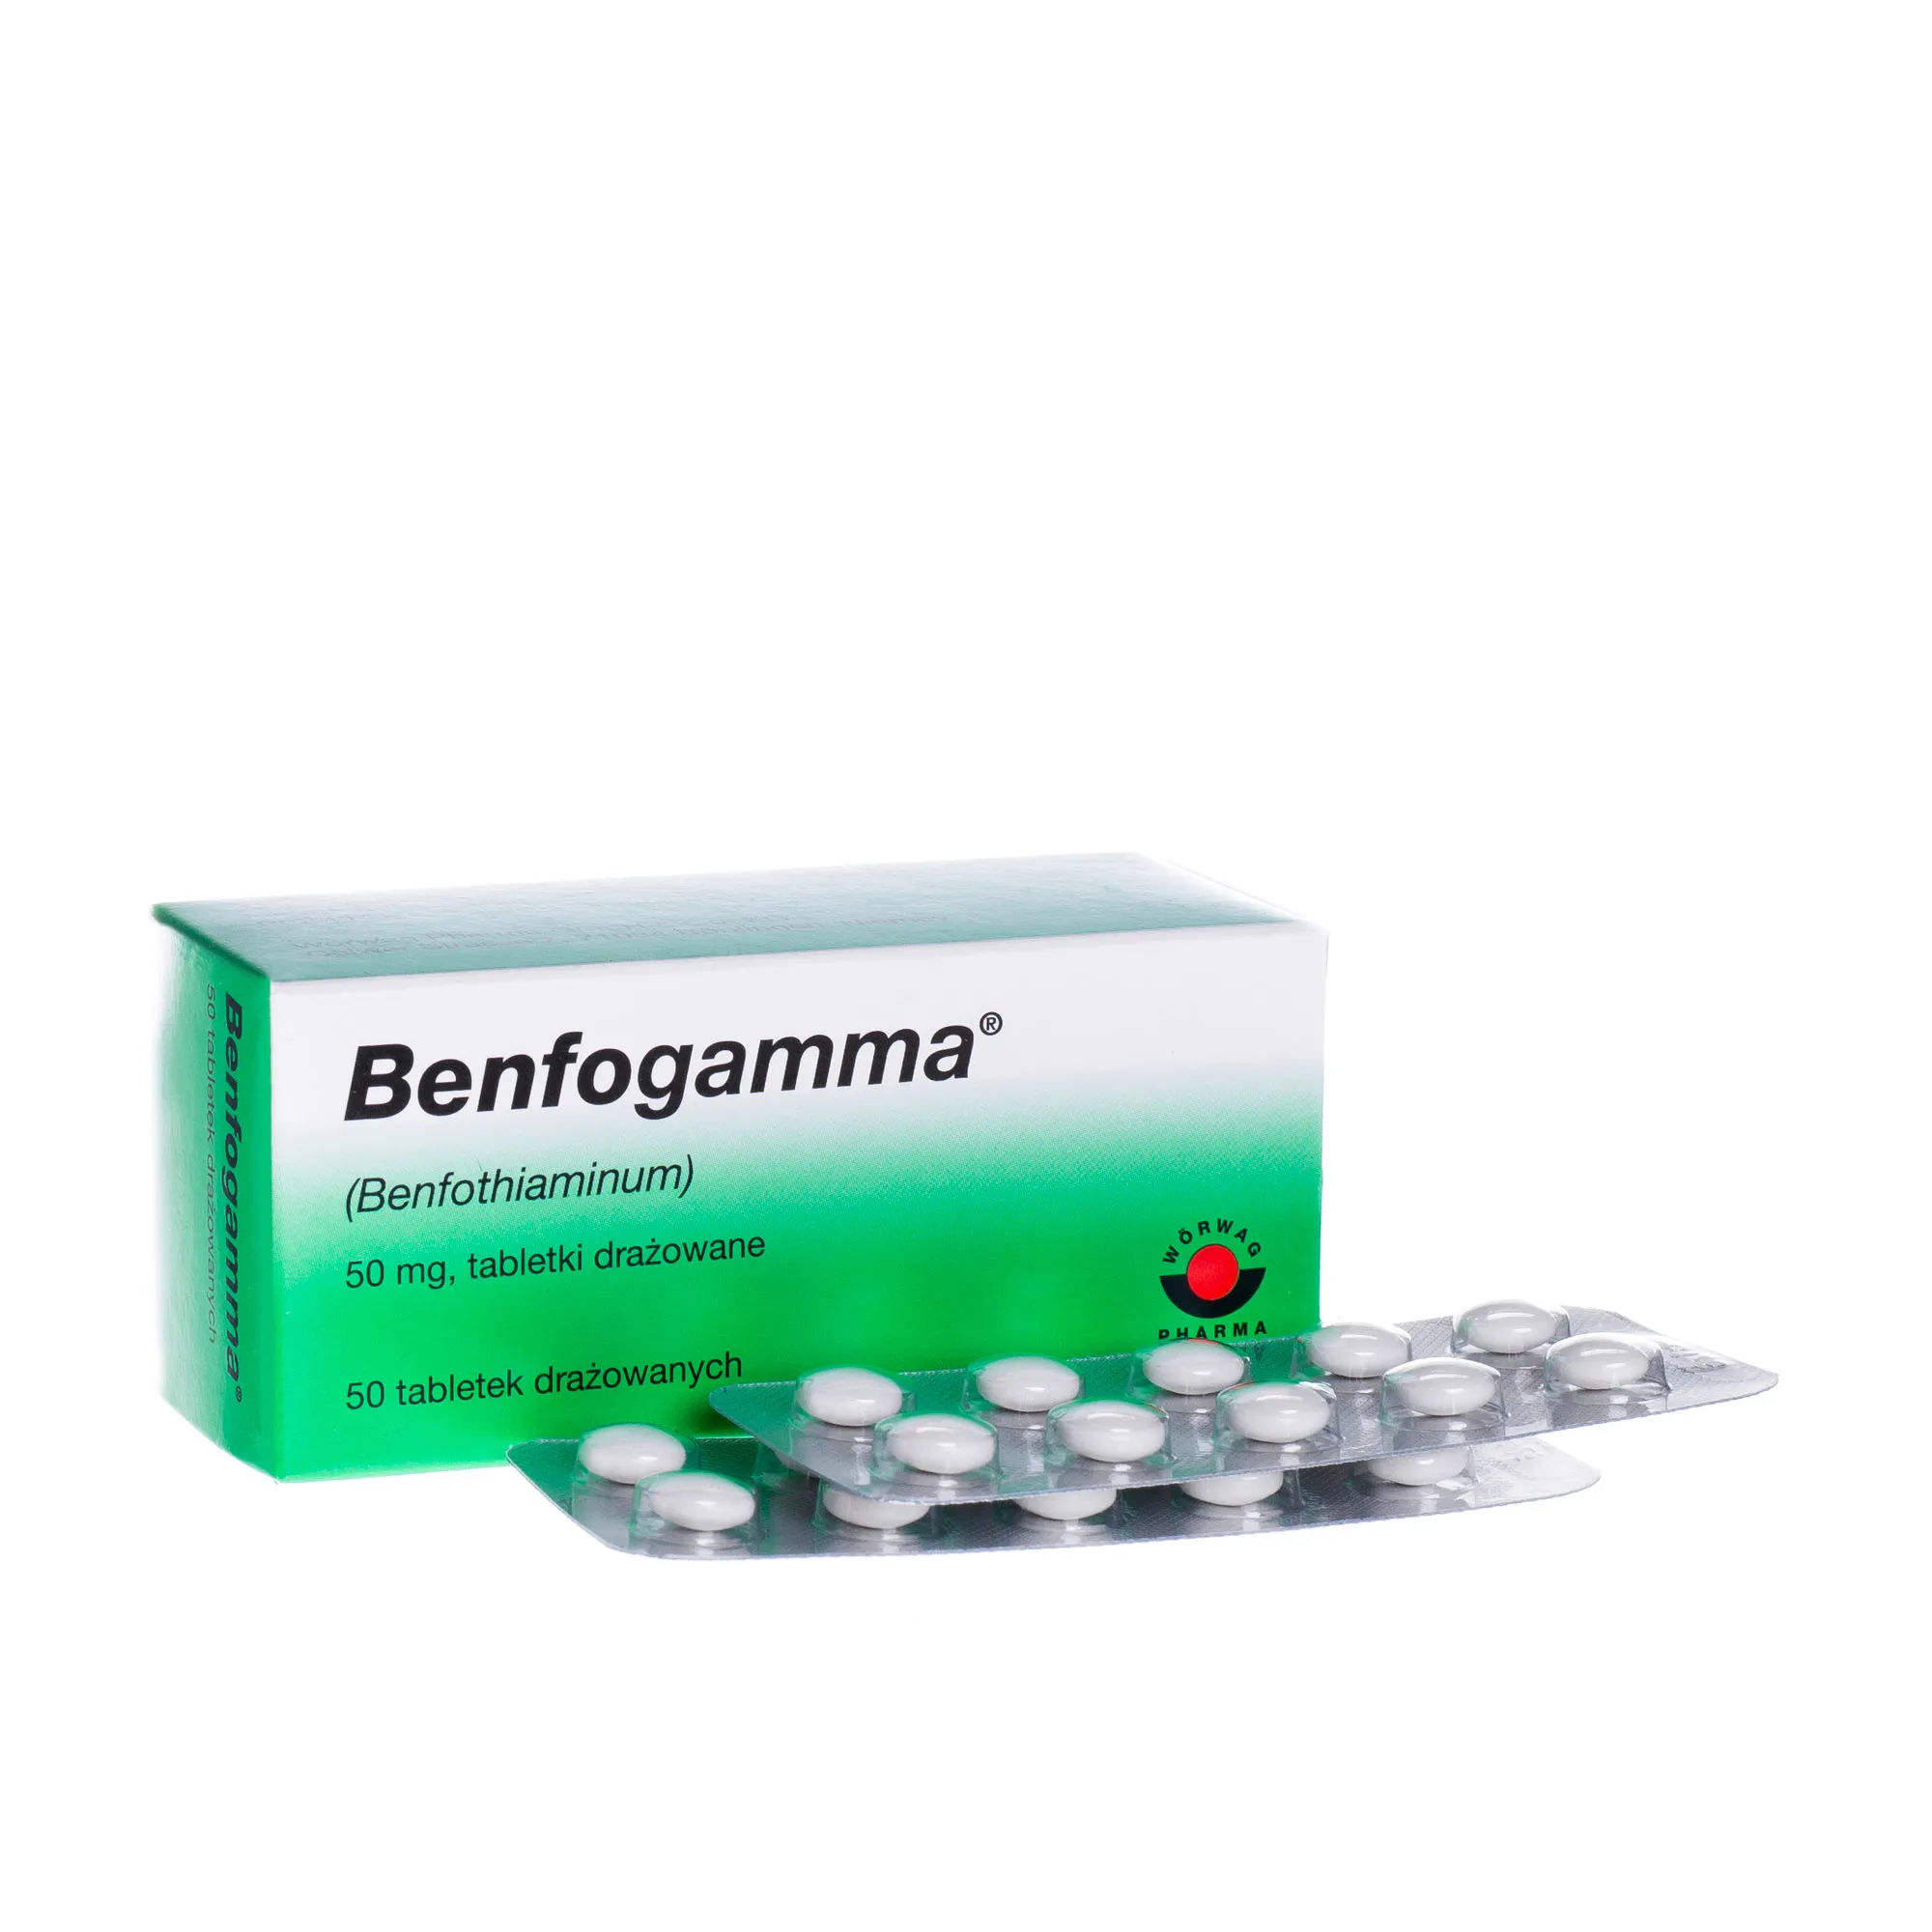 Benfogamma 50 mg, 50 tabletek drażowanych